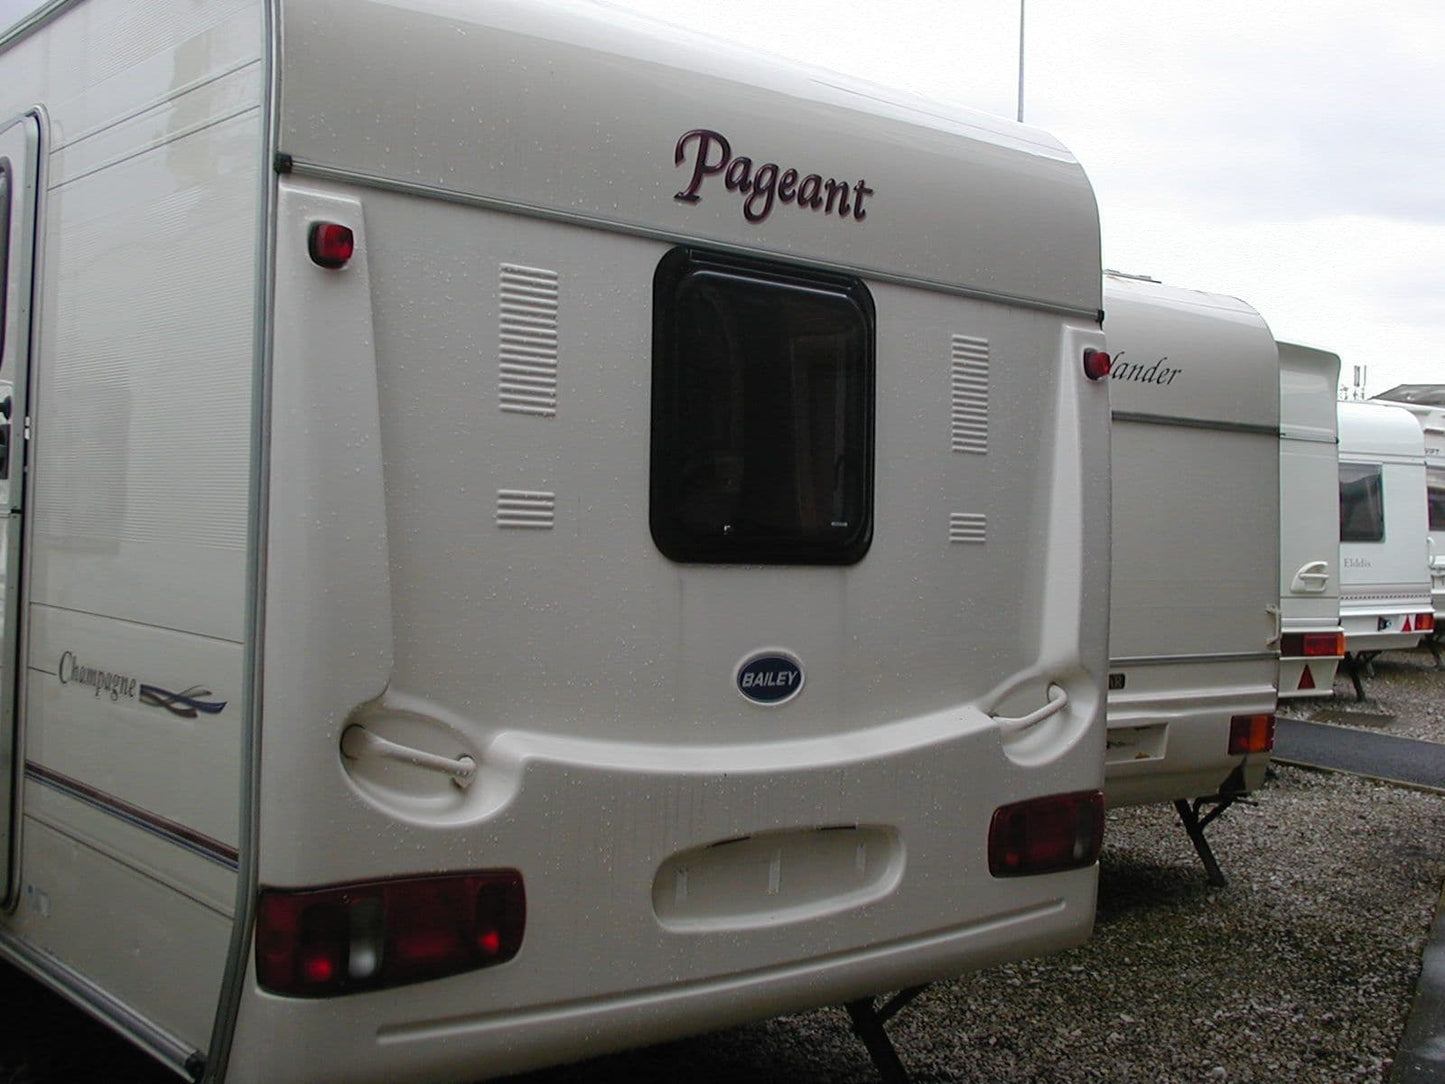 Bailey caravan rear panel 006